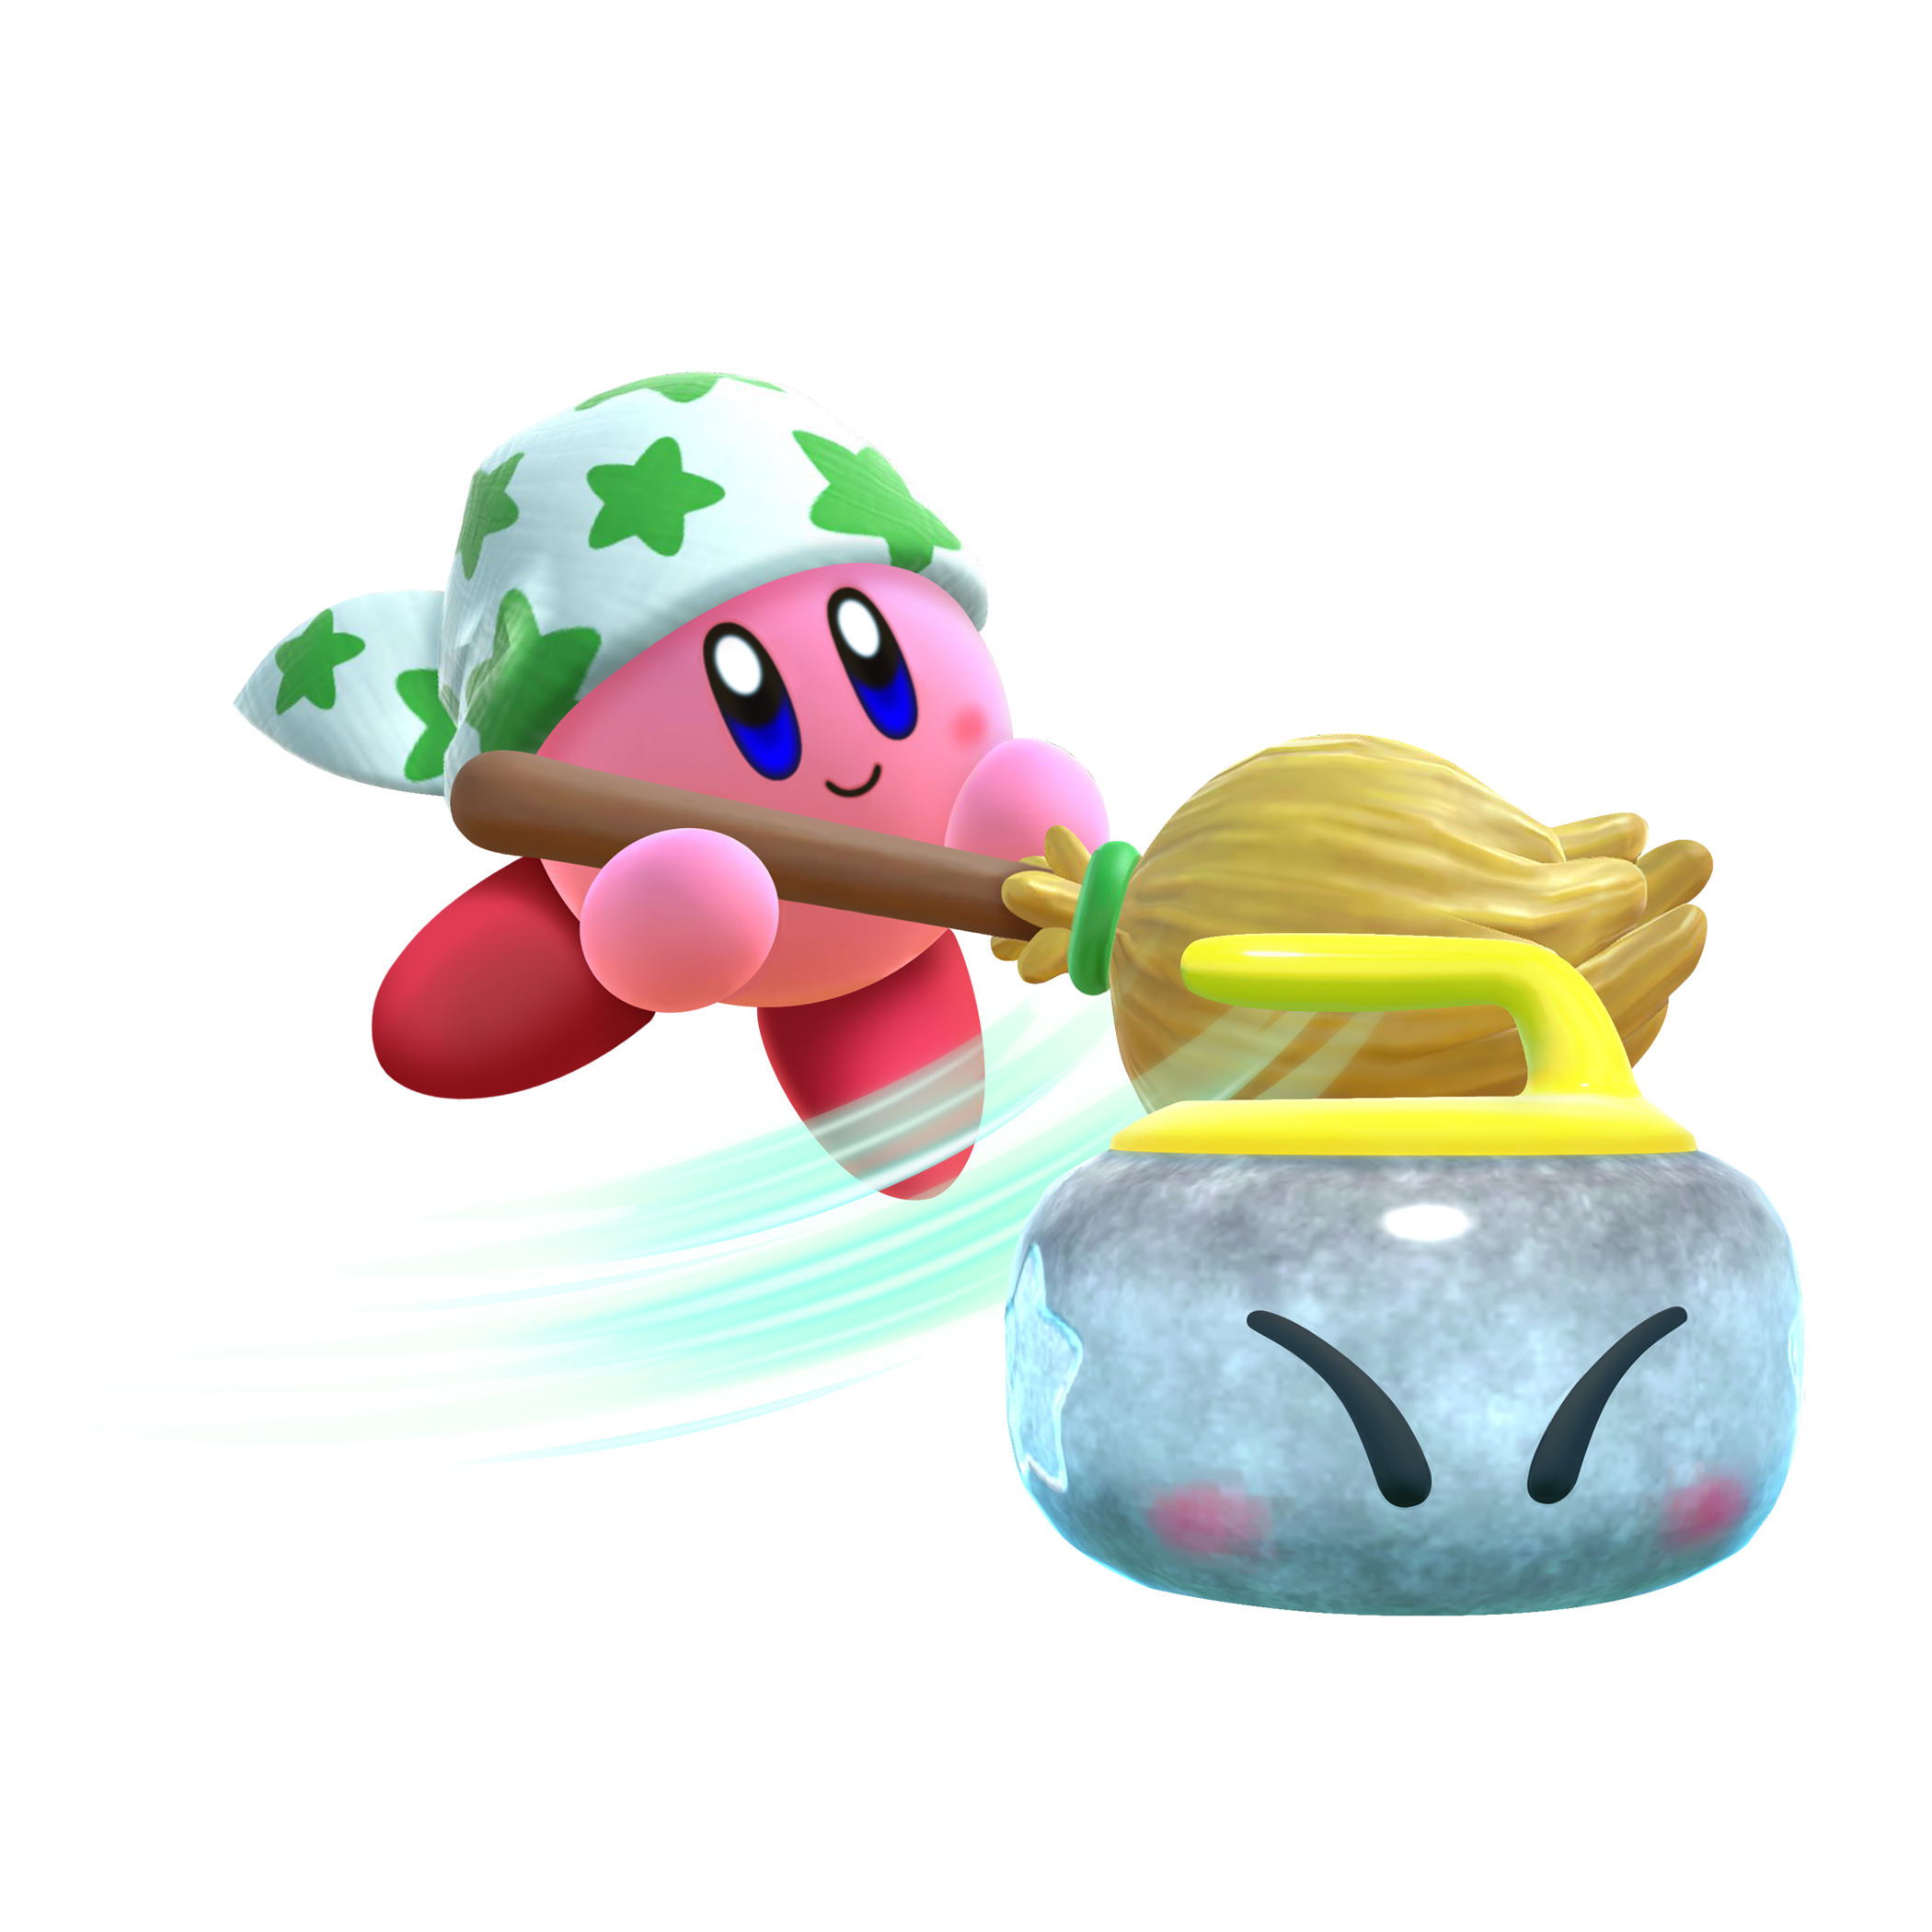 It’s Good To Be A Kirby Fan